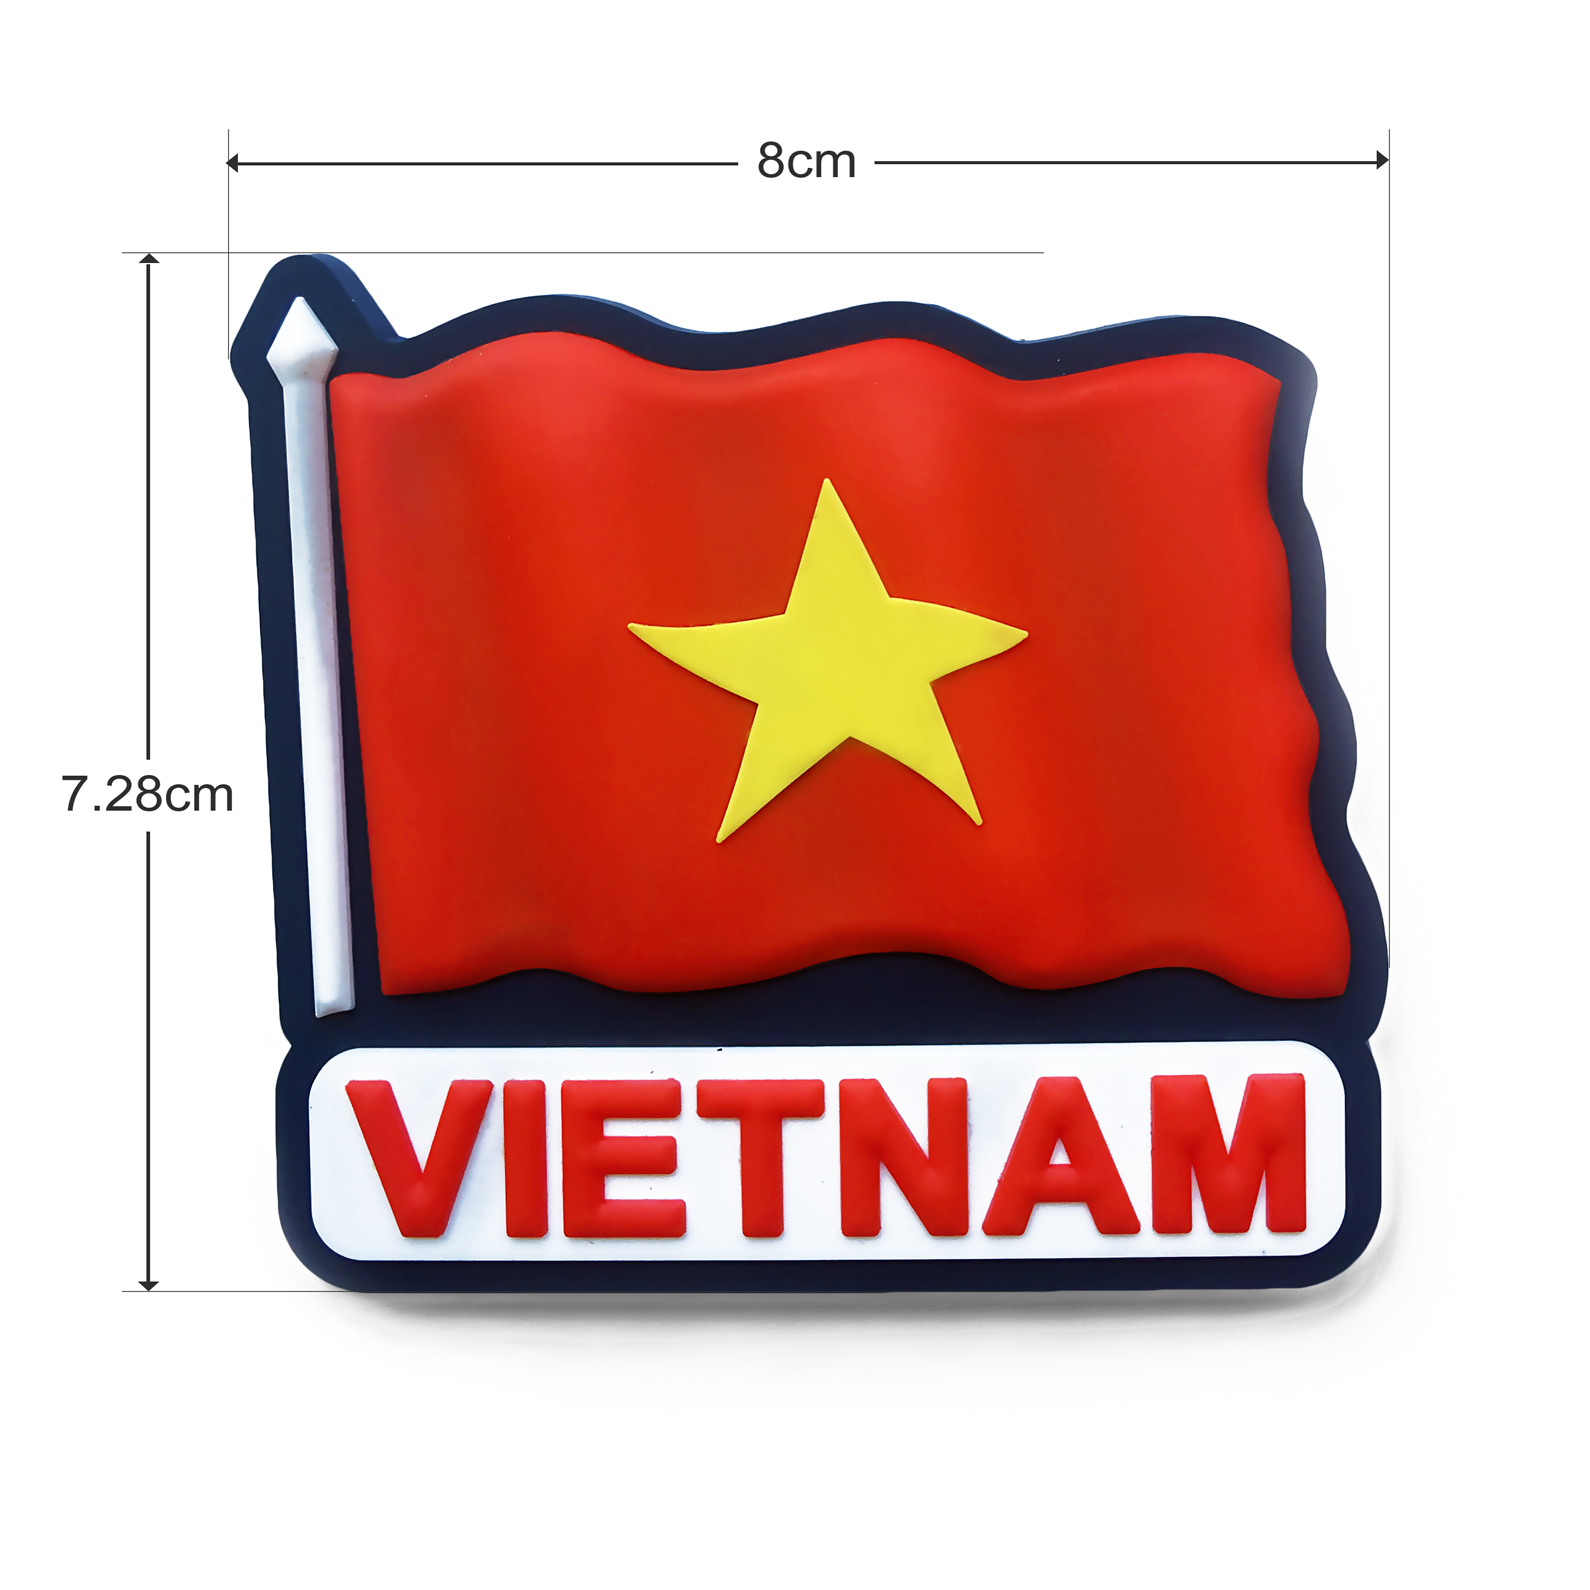 Quốc kỳ Việt Nam - Với những nỗ lực cải cách và phát triển, nước Việt Nam đang trở thành một quốc gia phát triển và tự hào với biểu tượng Quốc kỳ của mình. Để tôn vinh giá trị lịch sử và văn hóa, chúng ta hay xem ảnh về Quốc kỳ Việt Nam với những biểu tượng đã được thiết kế mới, bắt mắt hơn.